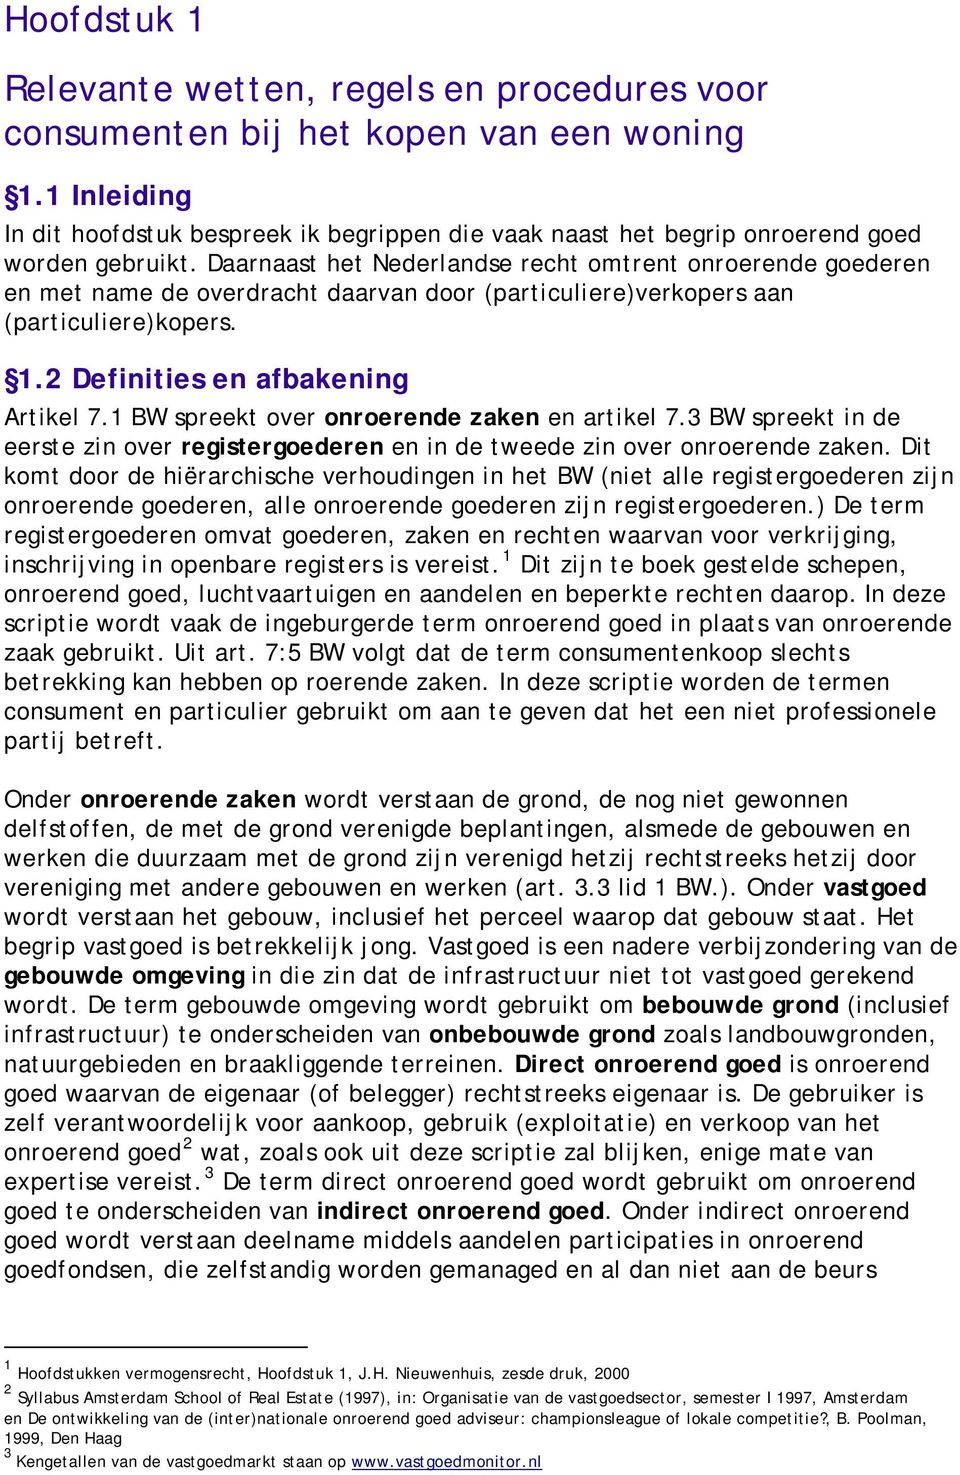 Daarnaast het Nederlandse recht omtrent onroerende goederen en met name de overdracht daarvan door (particuliere)verkopers aan (particuliere)kopers. 1.2 Definities en afbakening Artikel 7.